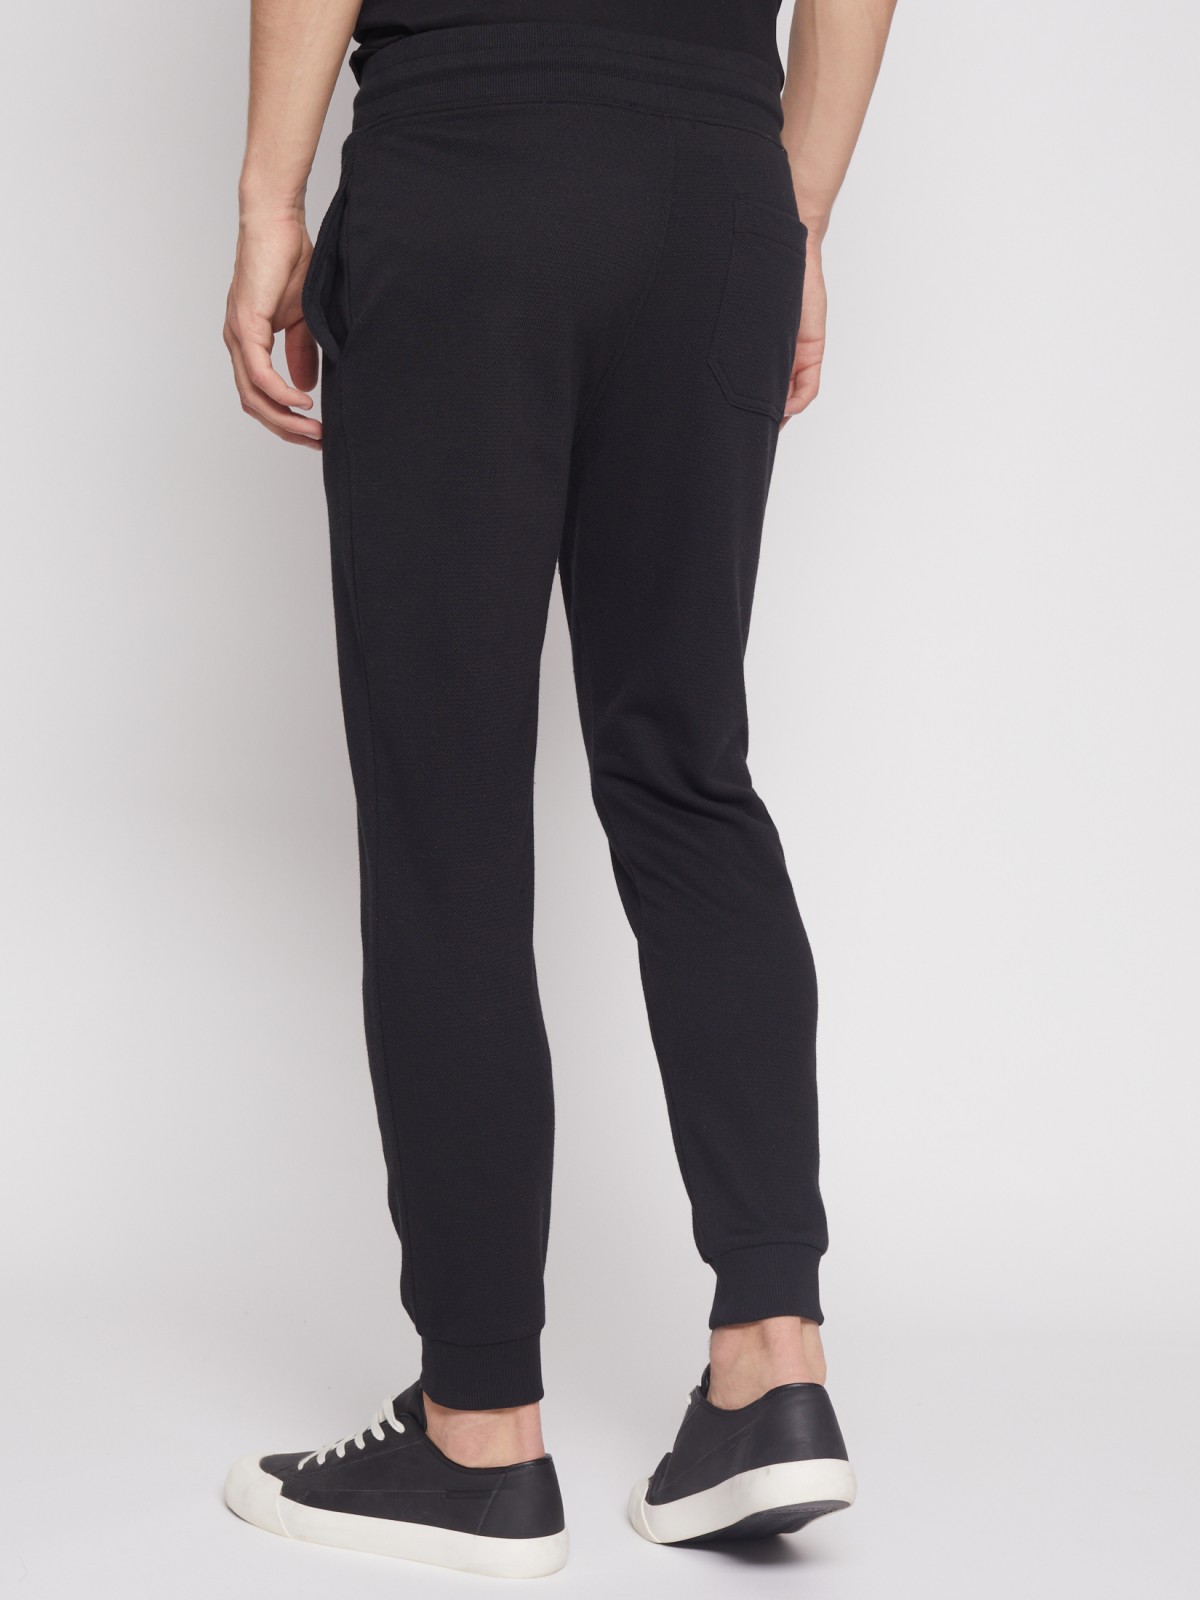 Спортивные брюки-джоггеры zolla 21231762F012, цвет черный, размер S - фото 6